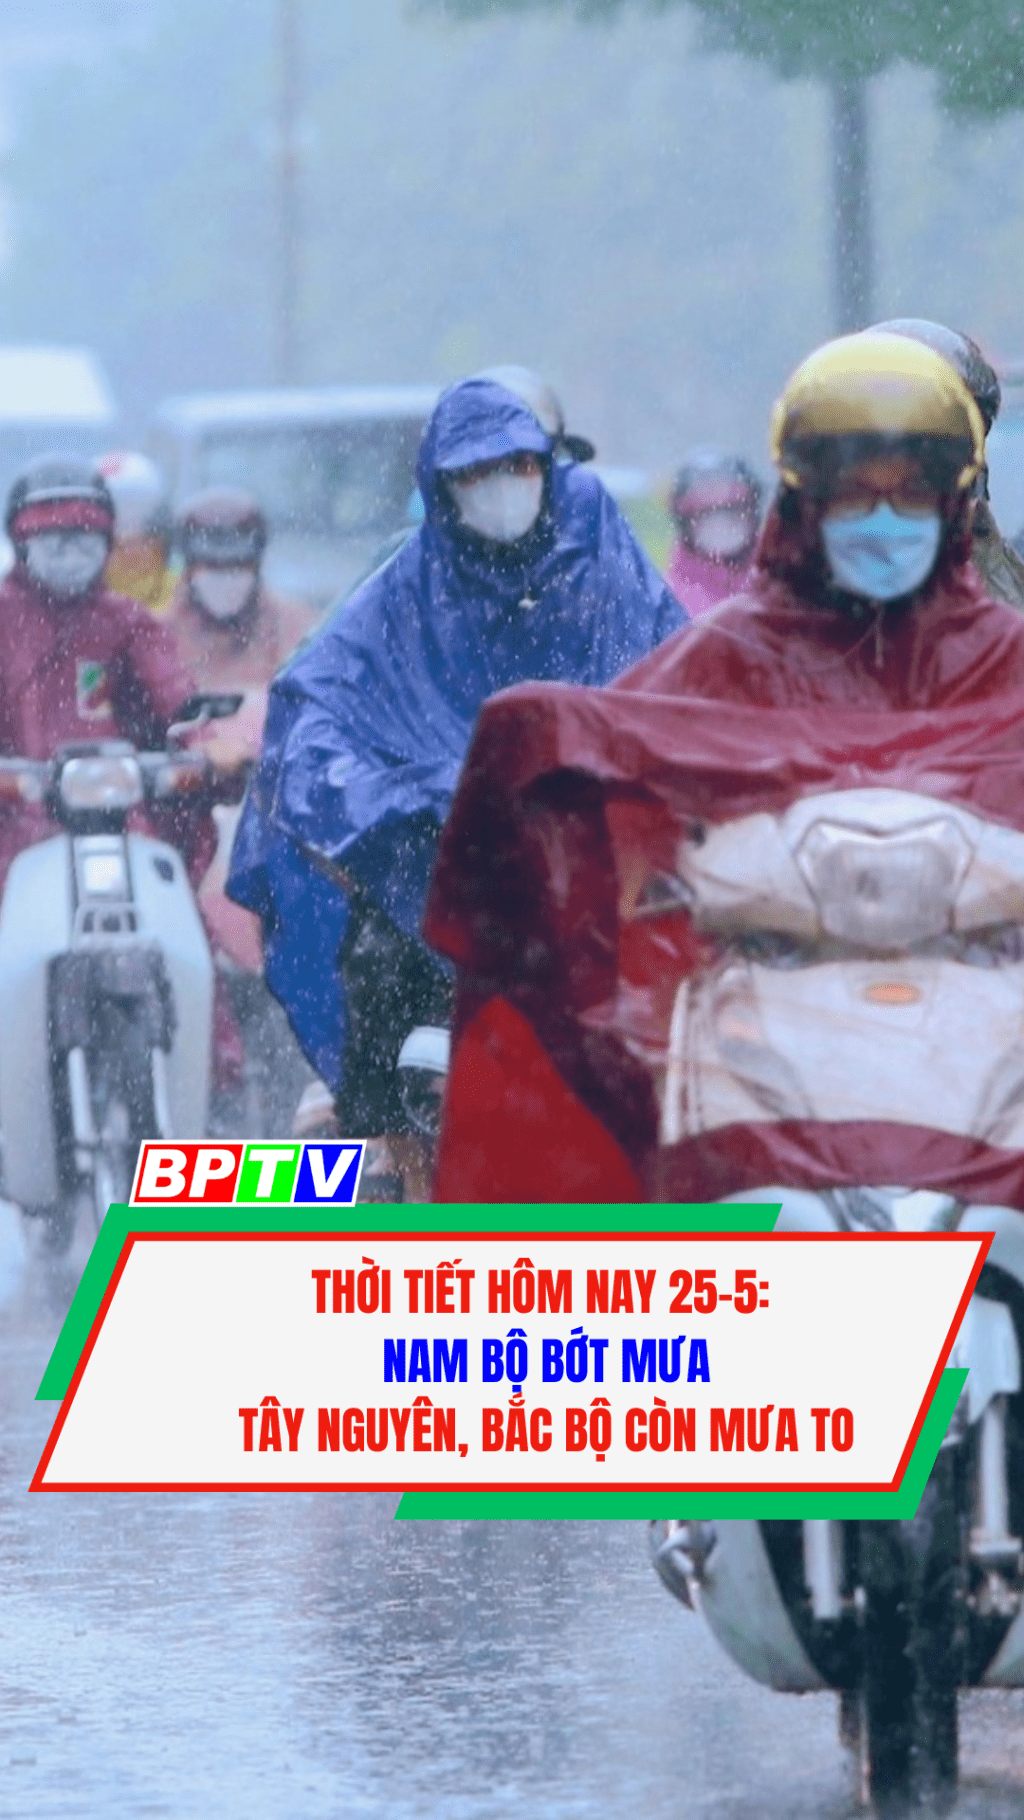 Thời tiết hôm nay 25-5: Nam Bộ bớt mưa; Tây Nguyên, Bắc Bộ còn mưa to #shorts